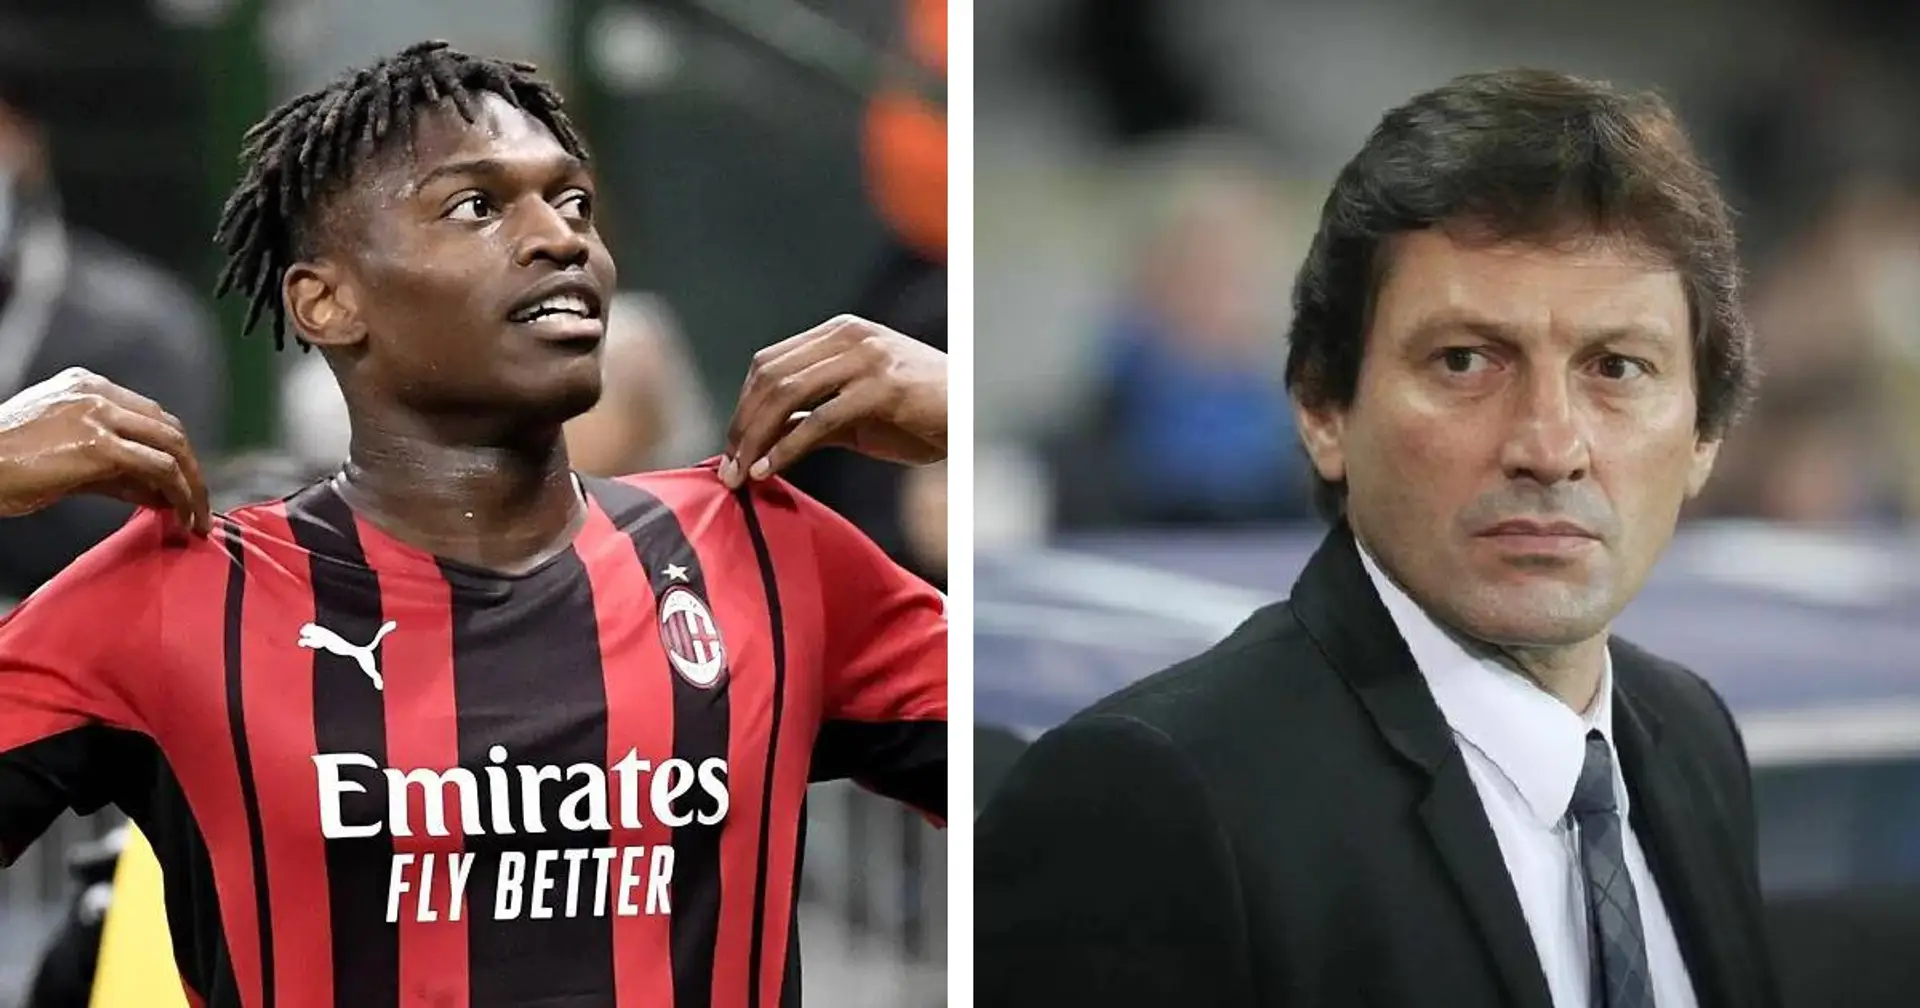 Le Milan veut contrer le PSG pour Leao: la stratégie des Rossoneri pour conserver le Portugais dévoilée